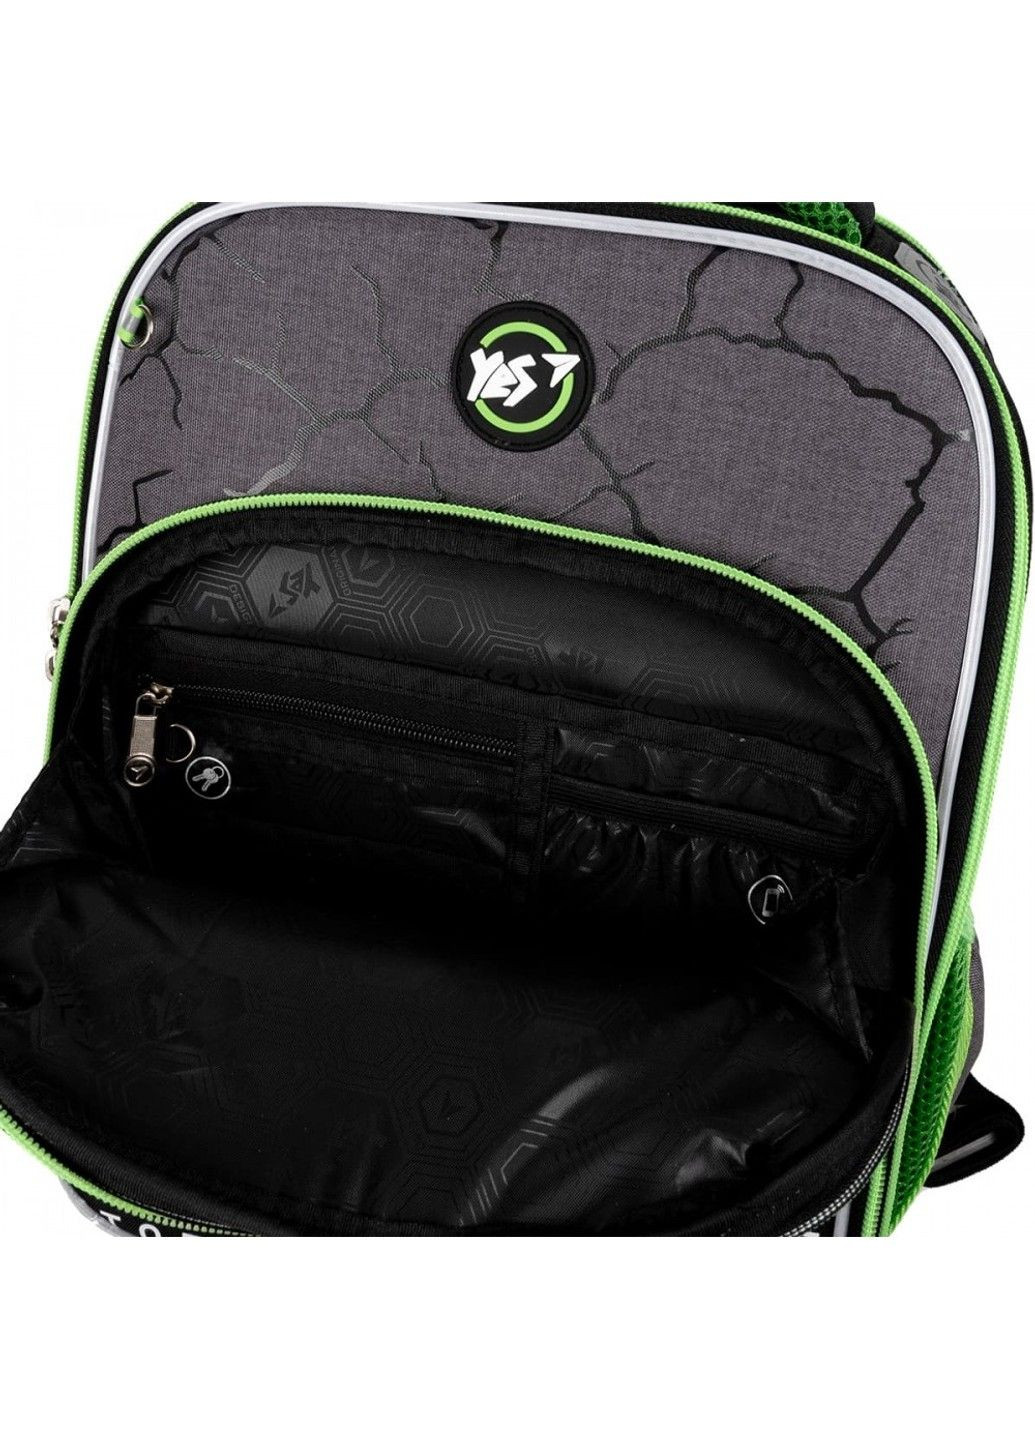 Шкільний рюкзак для молодших класів S-78 Lightning Yes (278404527)